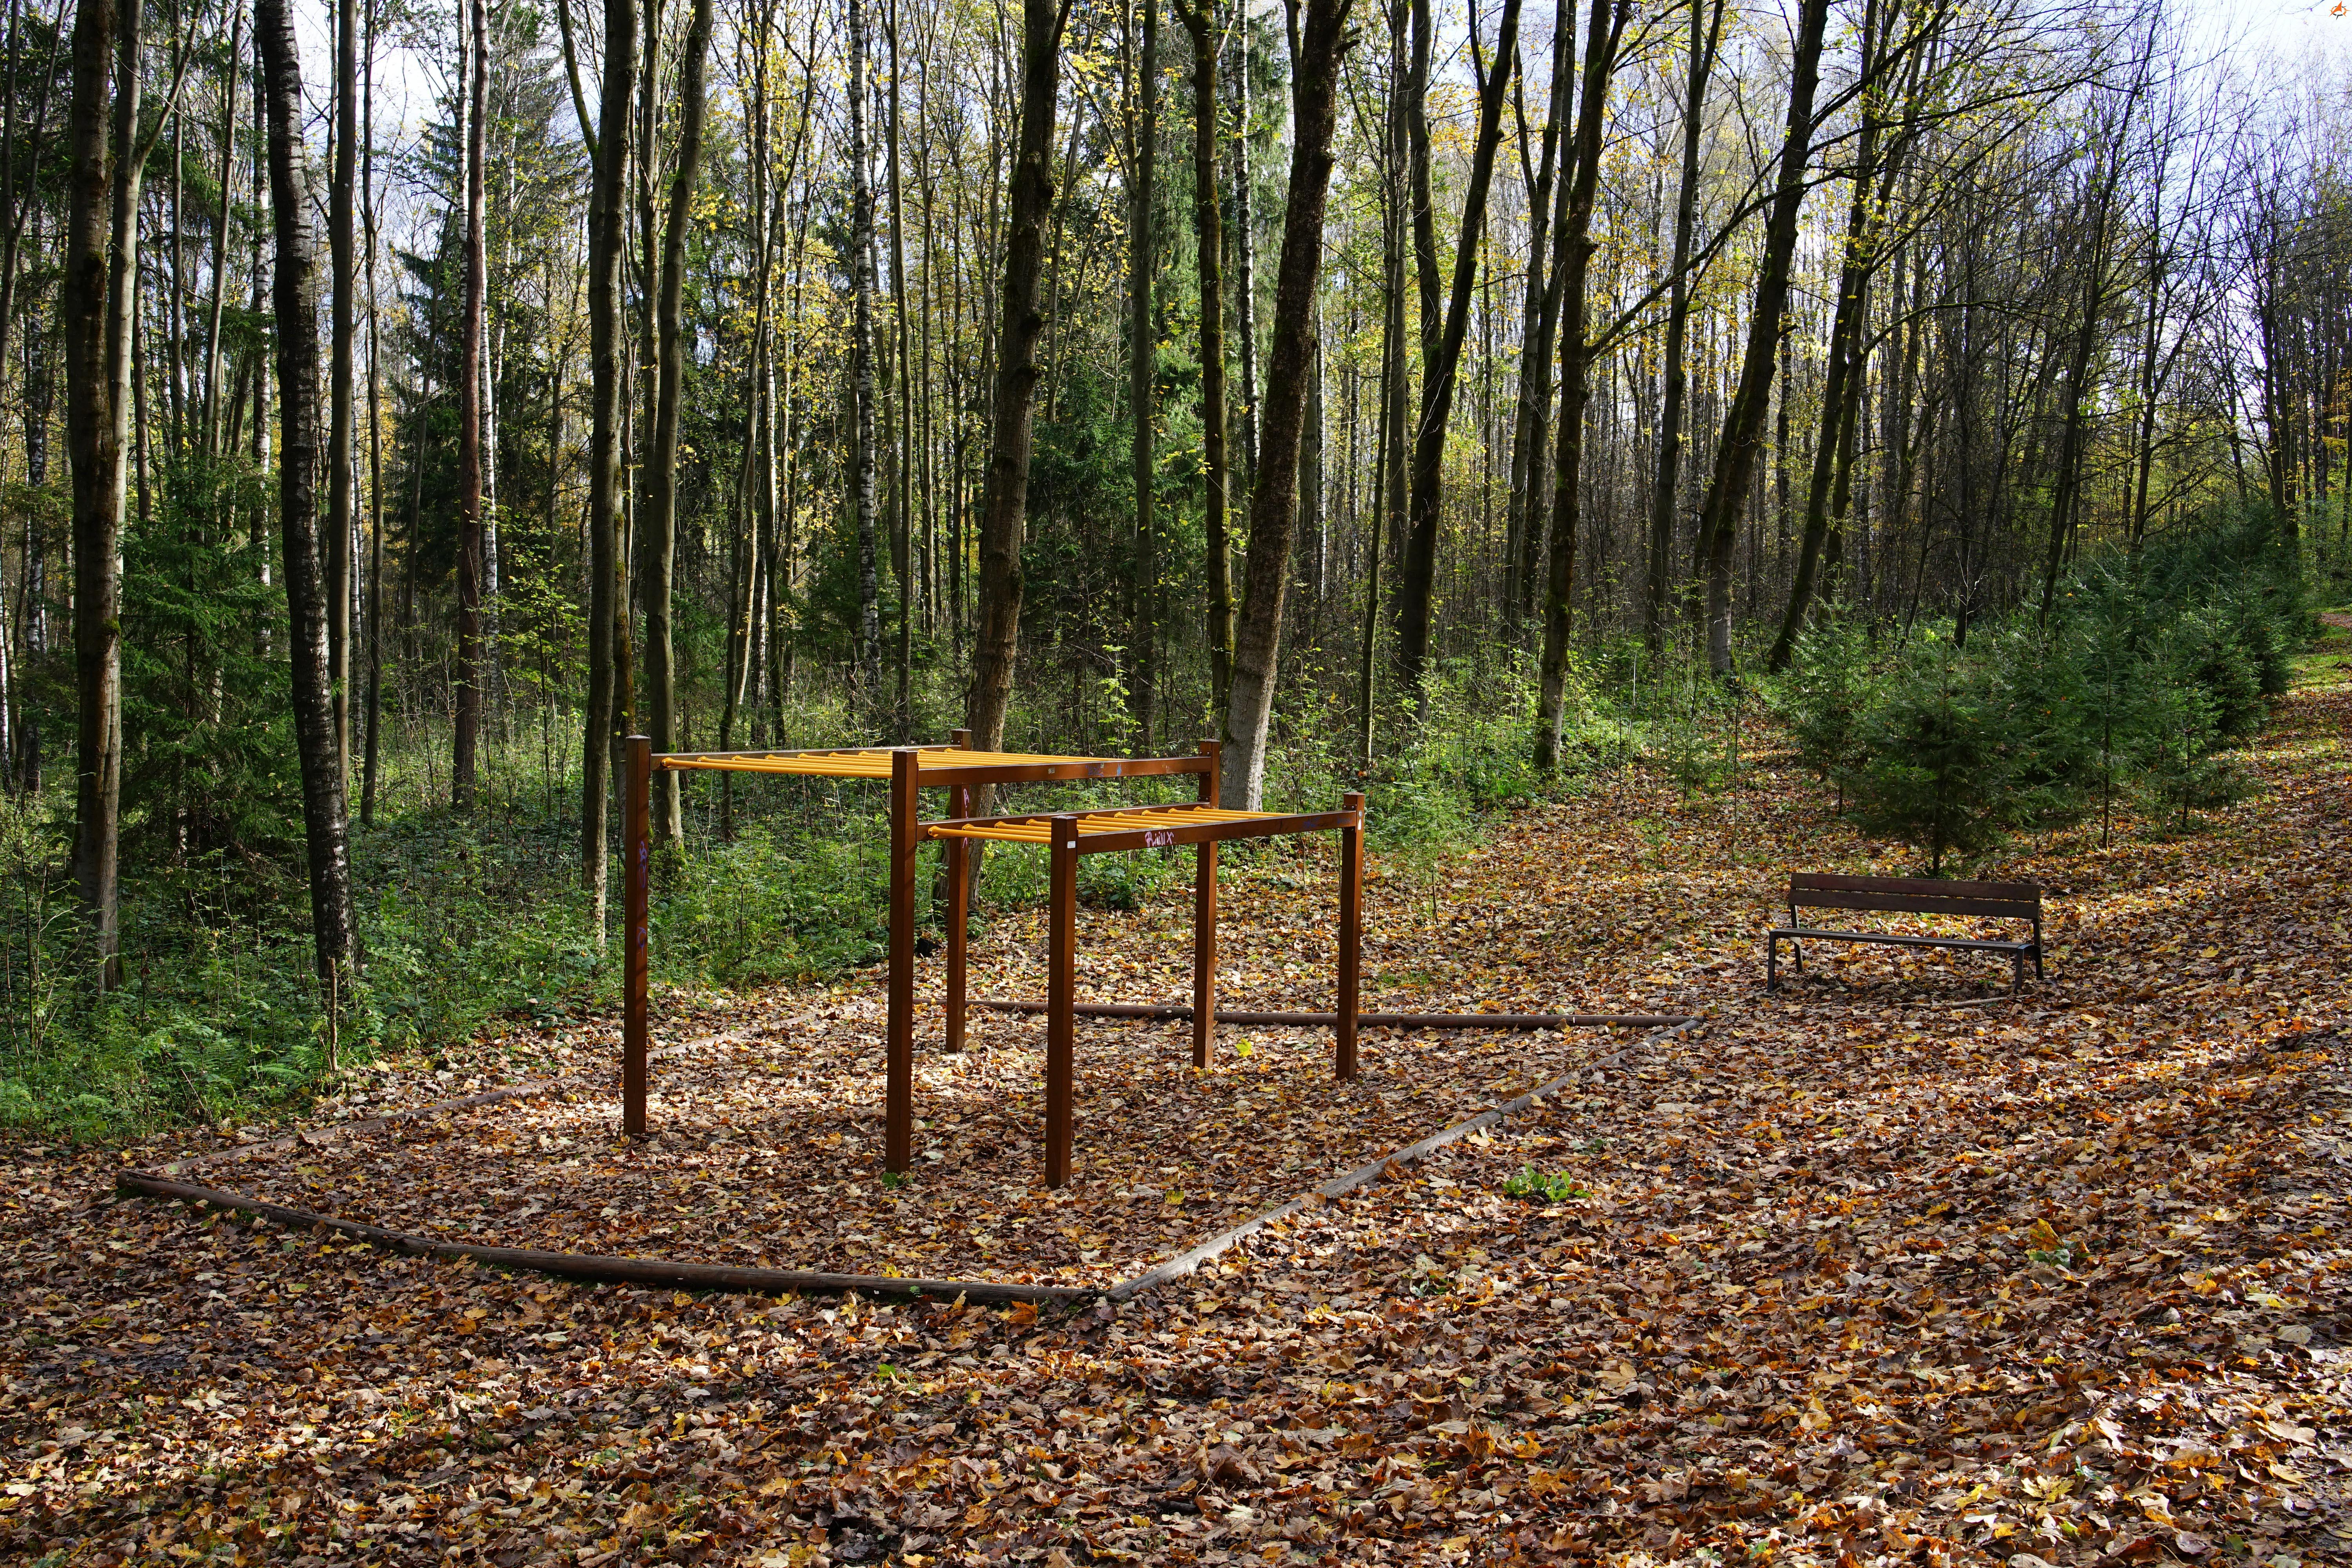 Chodník naprieč lesoparkom dopĺňa viacero športových nástrojov z dreva v nerušivom prostredí.